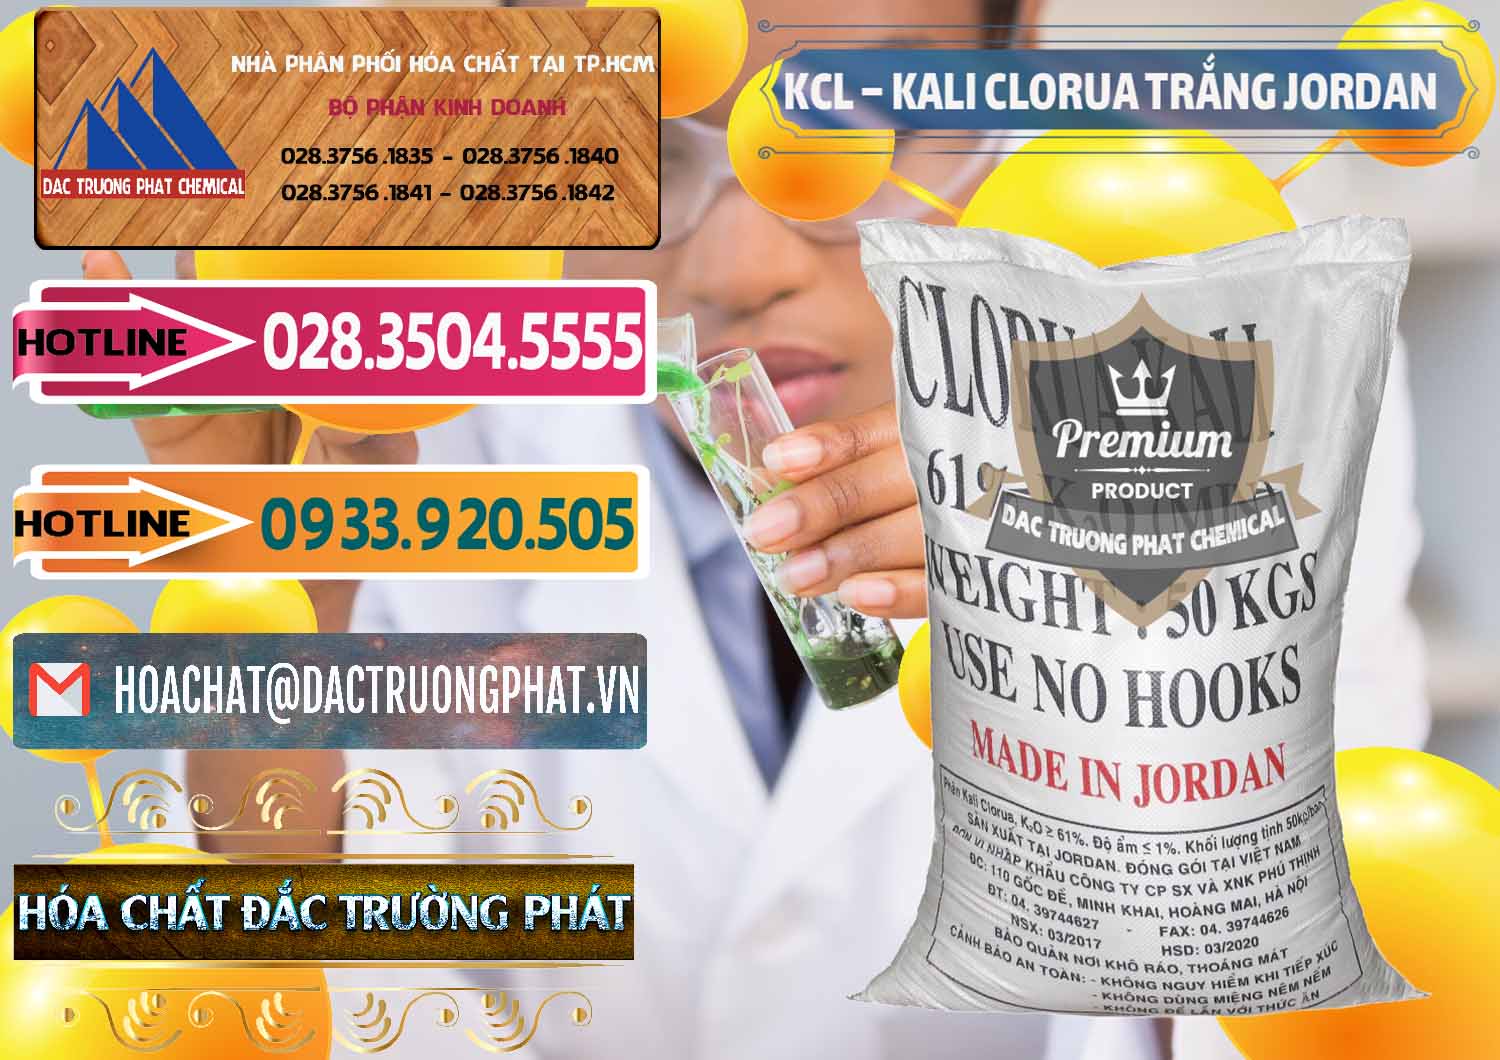 Đơn vị bán ( cung ứng ) KCL – Kali Clorua Trắng Jordan - 0088 - Công ty kinh doanh ( cung cấp ) hóa chất tại TP.HCM - dactruongphat.vn